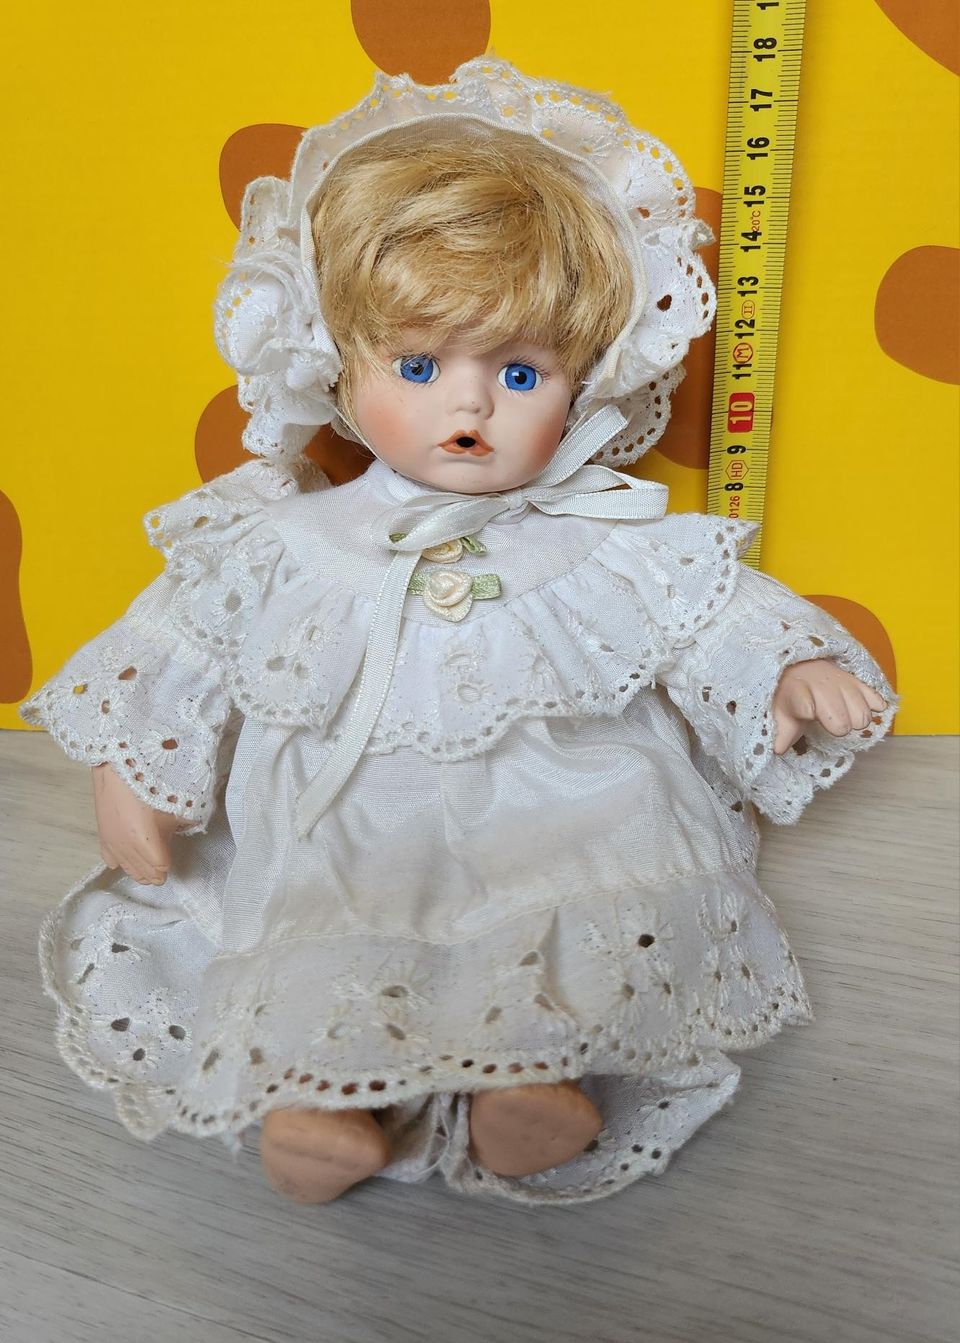 Vintage posliininen nukke